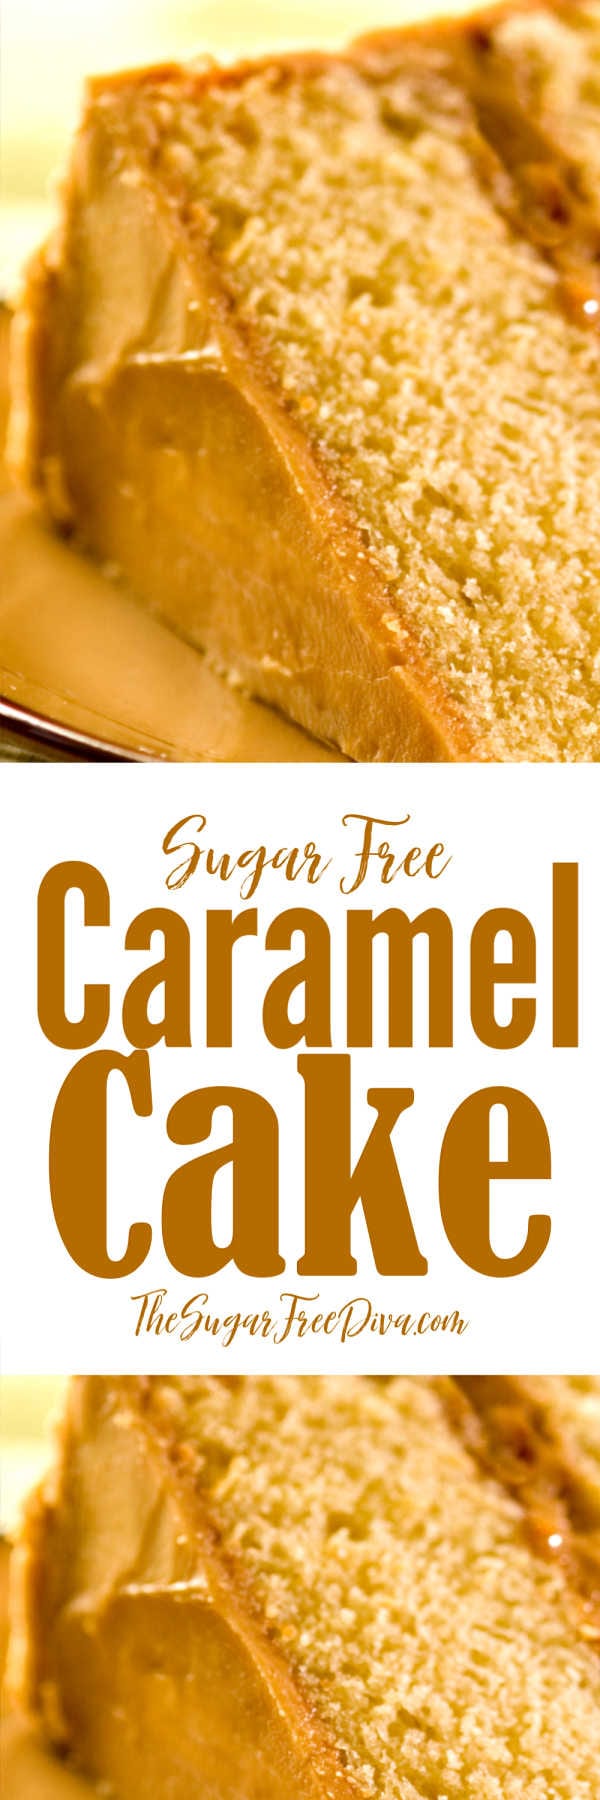 Sugar Free Caramel Cake